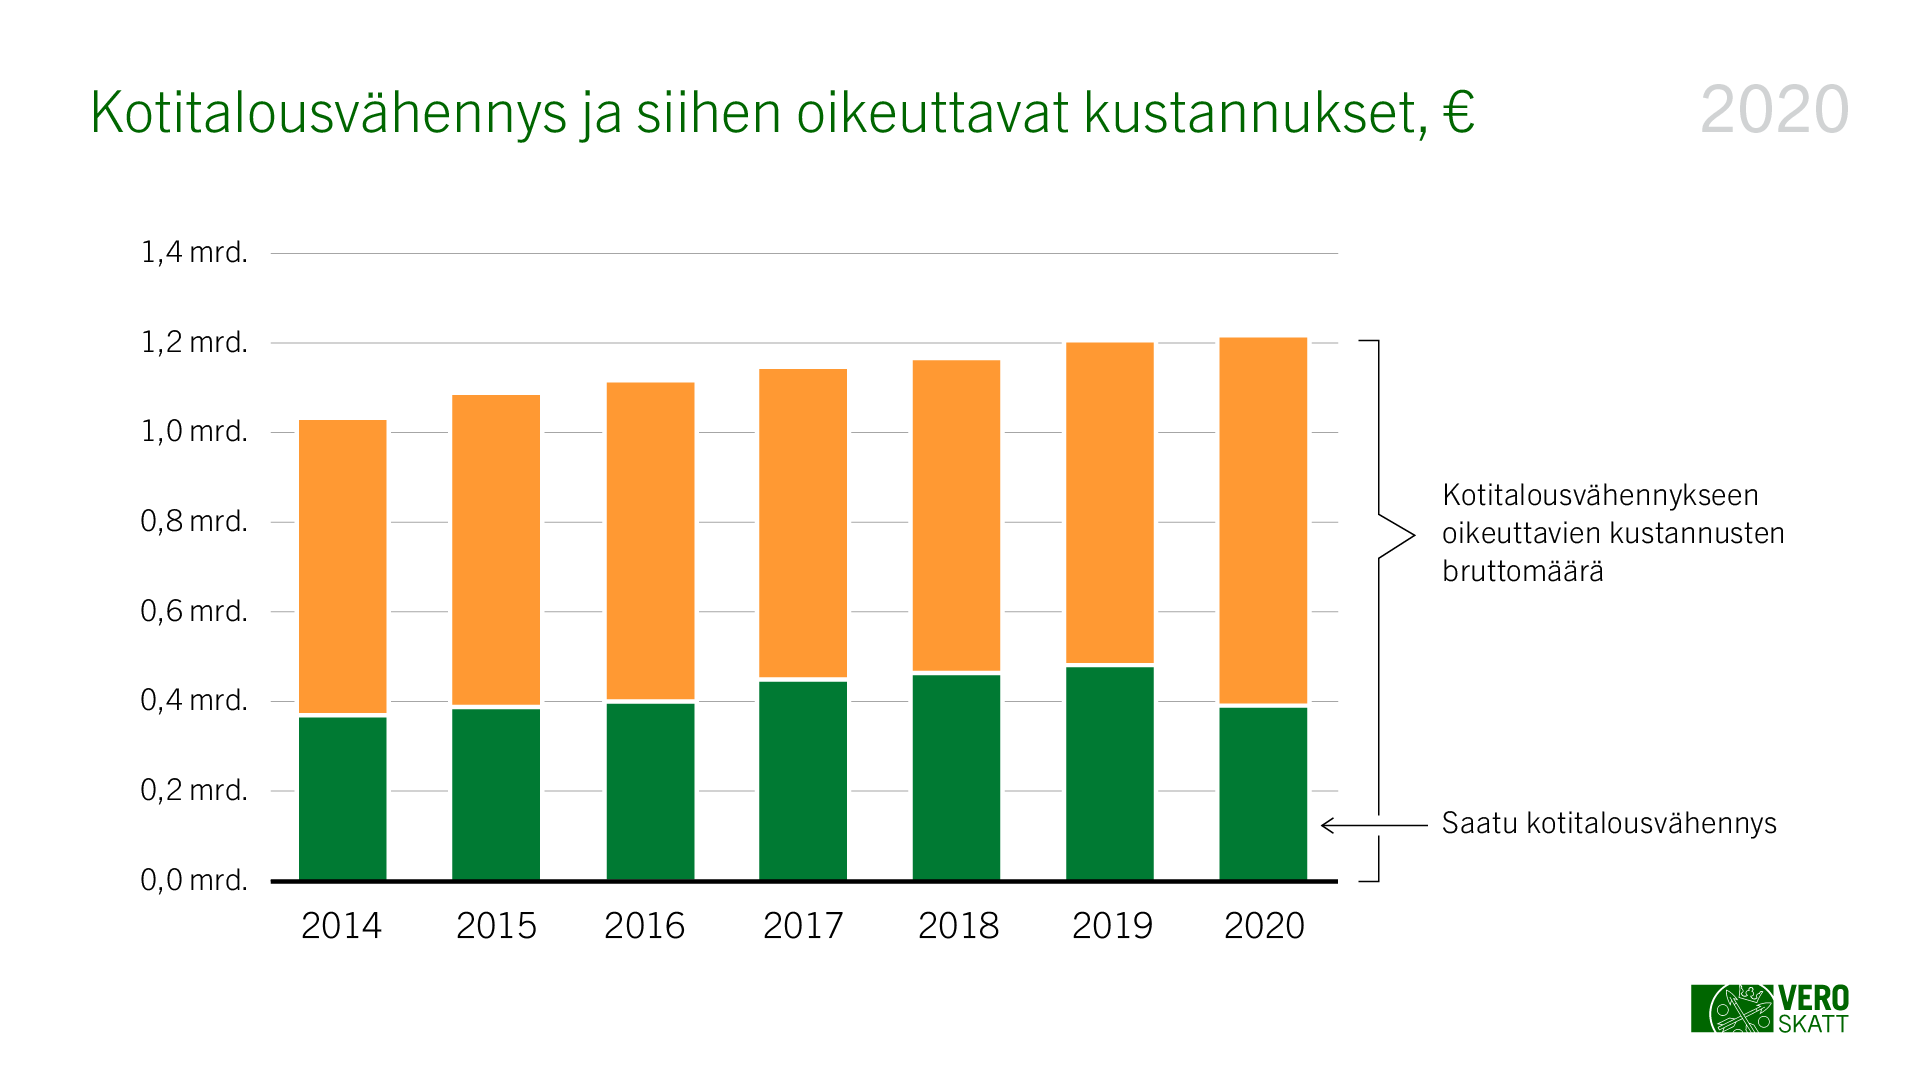 Kotitalousvähennys ja siihen oikeuttavat kustannukset euroissa vuosina 2014-2020. Taulukon tiedot on kerrottu leipätekstissä.